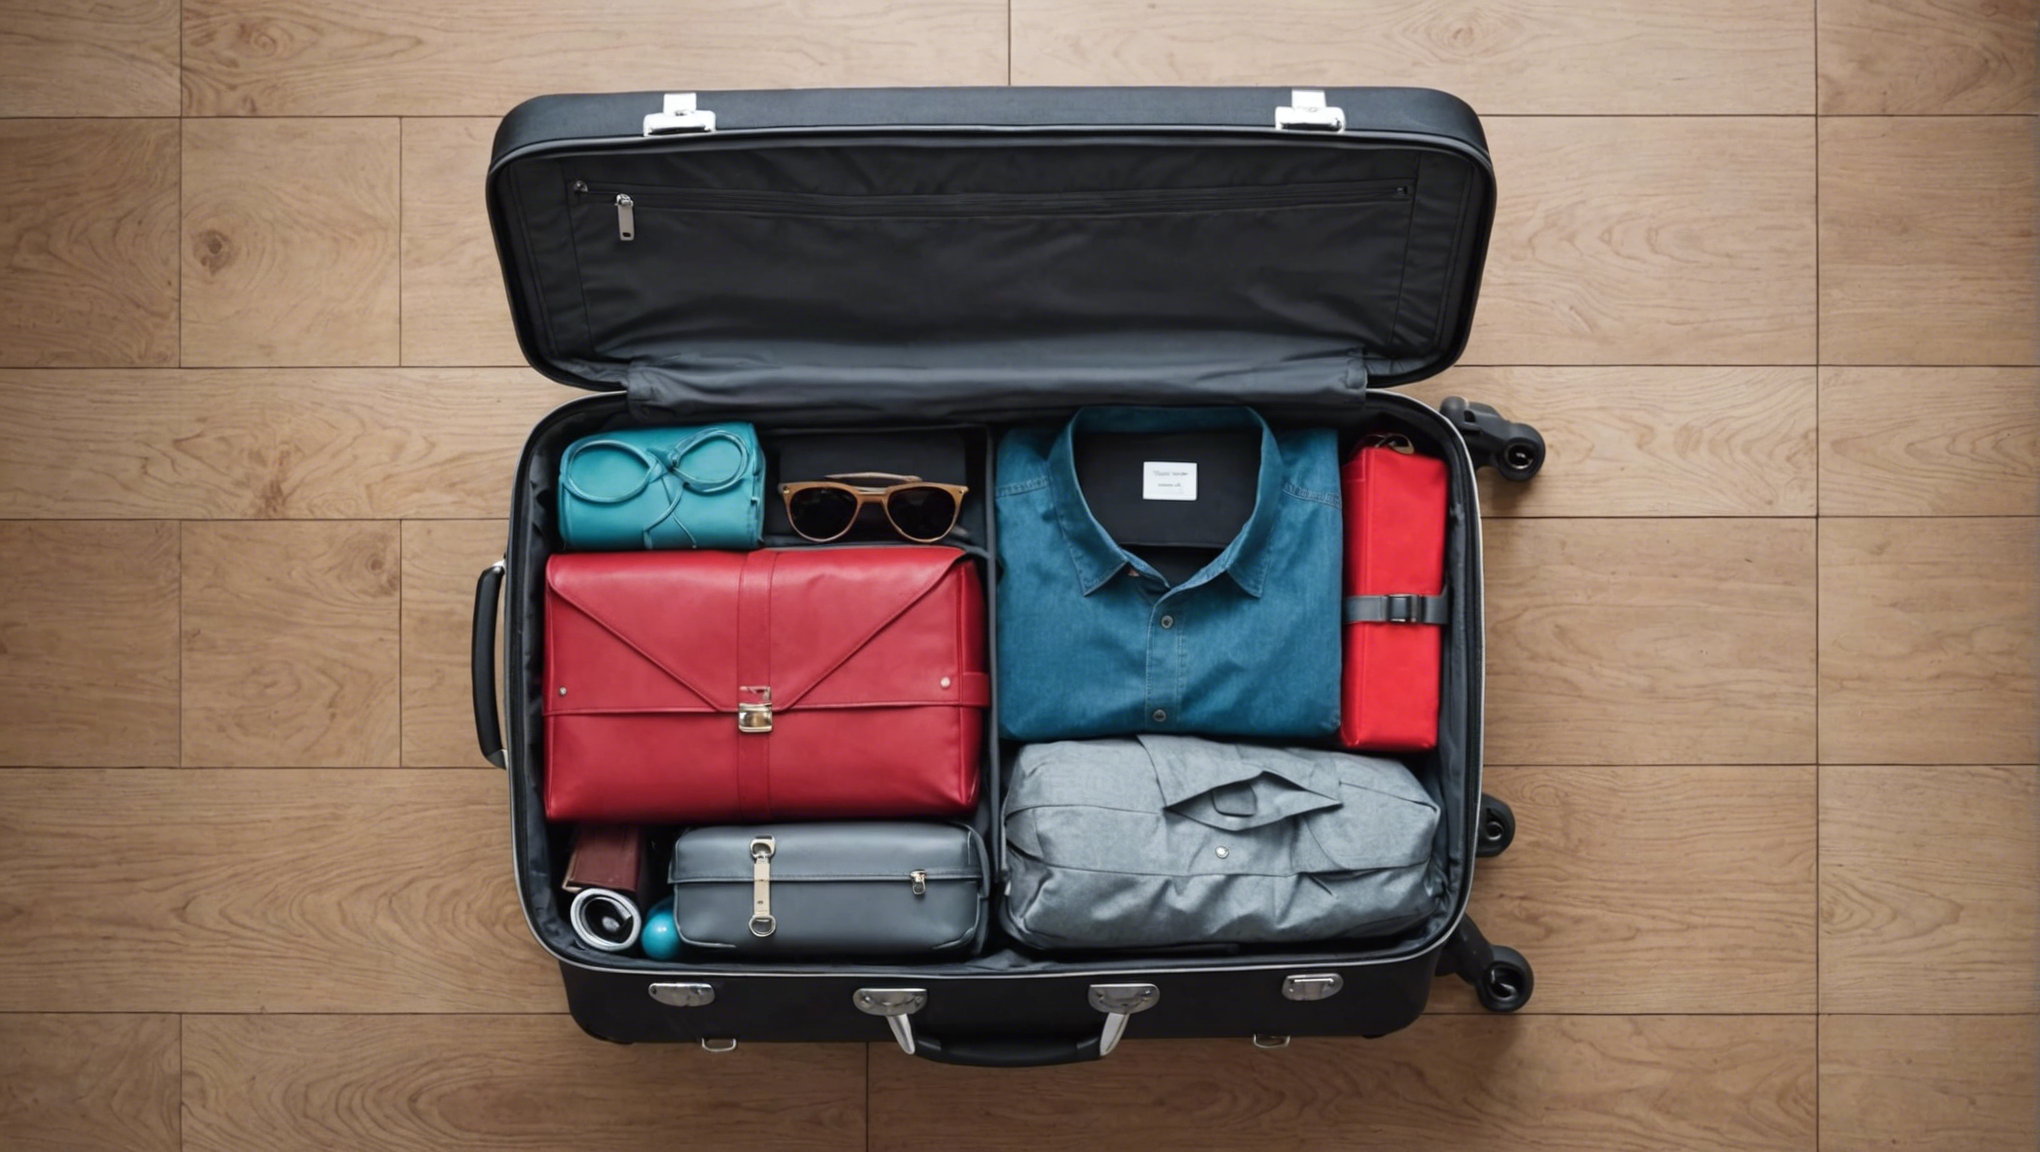 découvrez des astuces pratiques pour peser facilement votre valise avant de partir en voyage en avion.